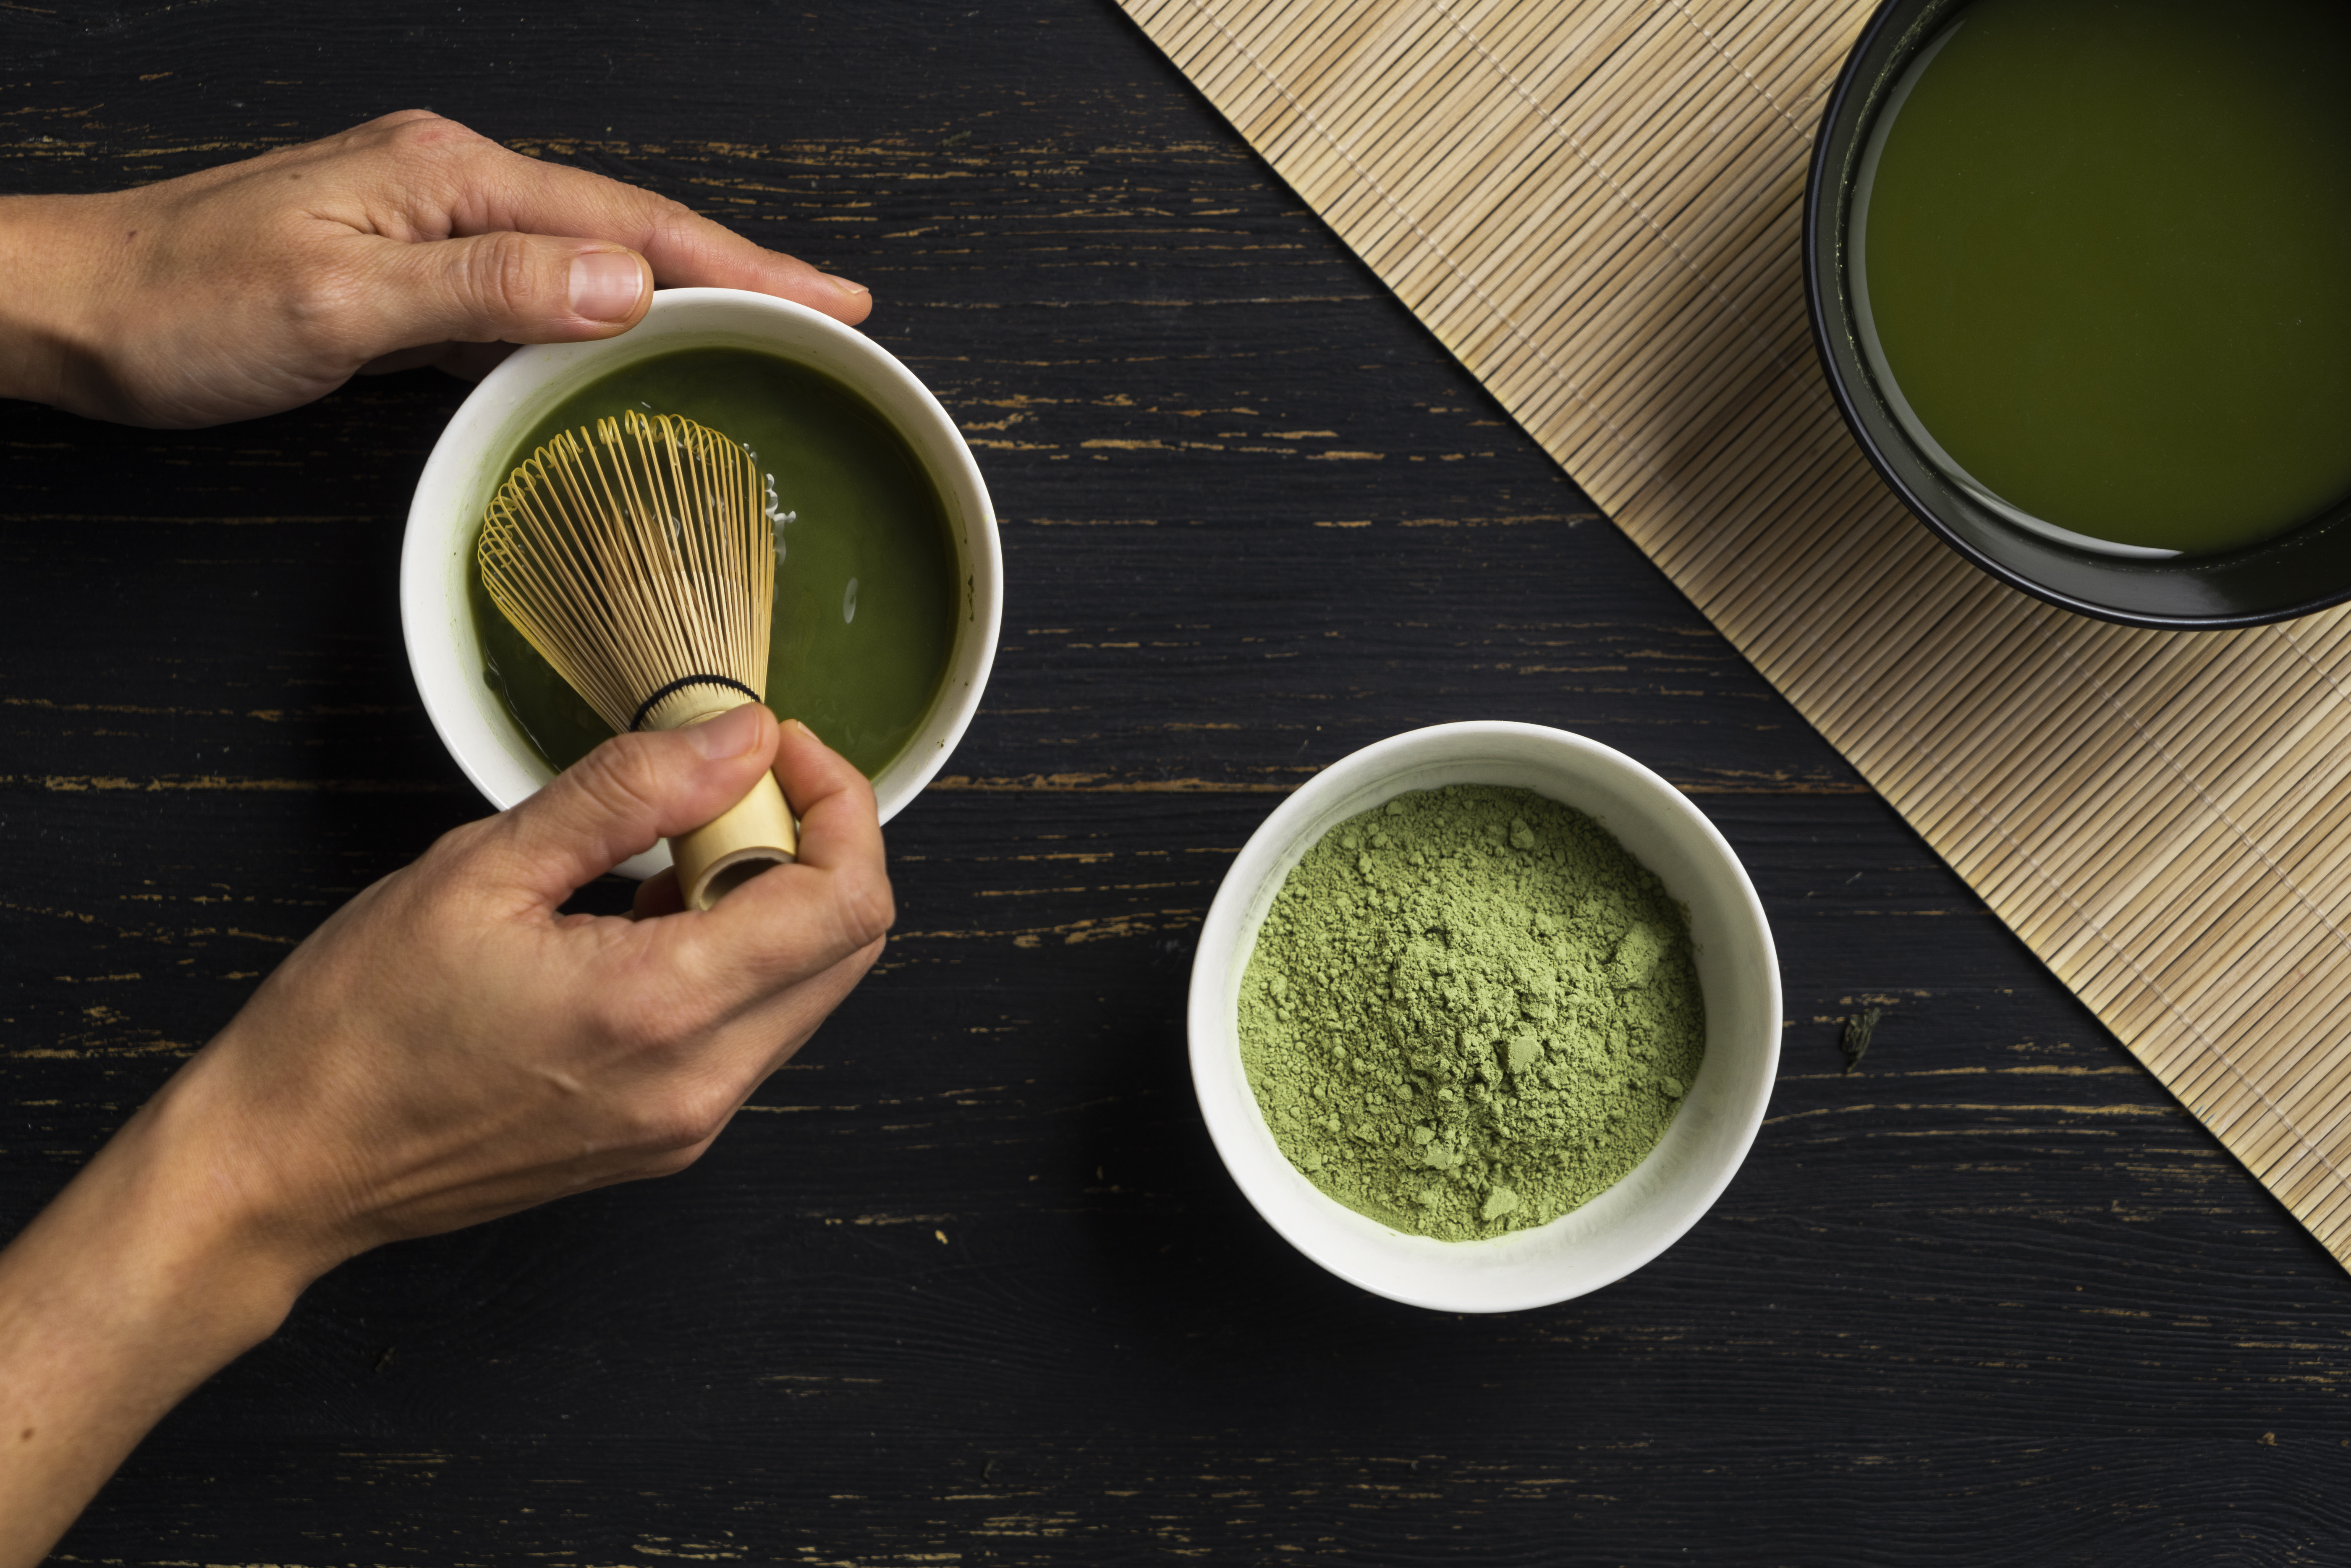 Té Matcha contiene 100 veces más antioxidantes: cómo conseguirlo y  prepararlo bien - Gente - Cultura 